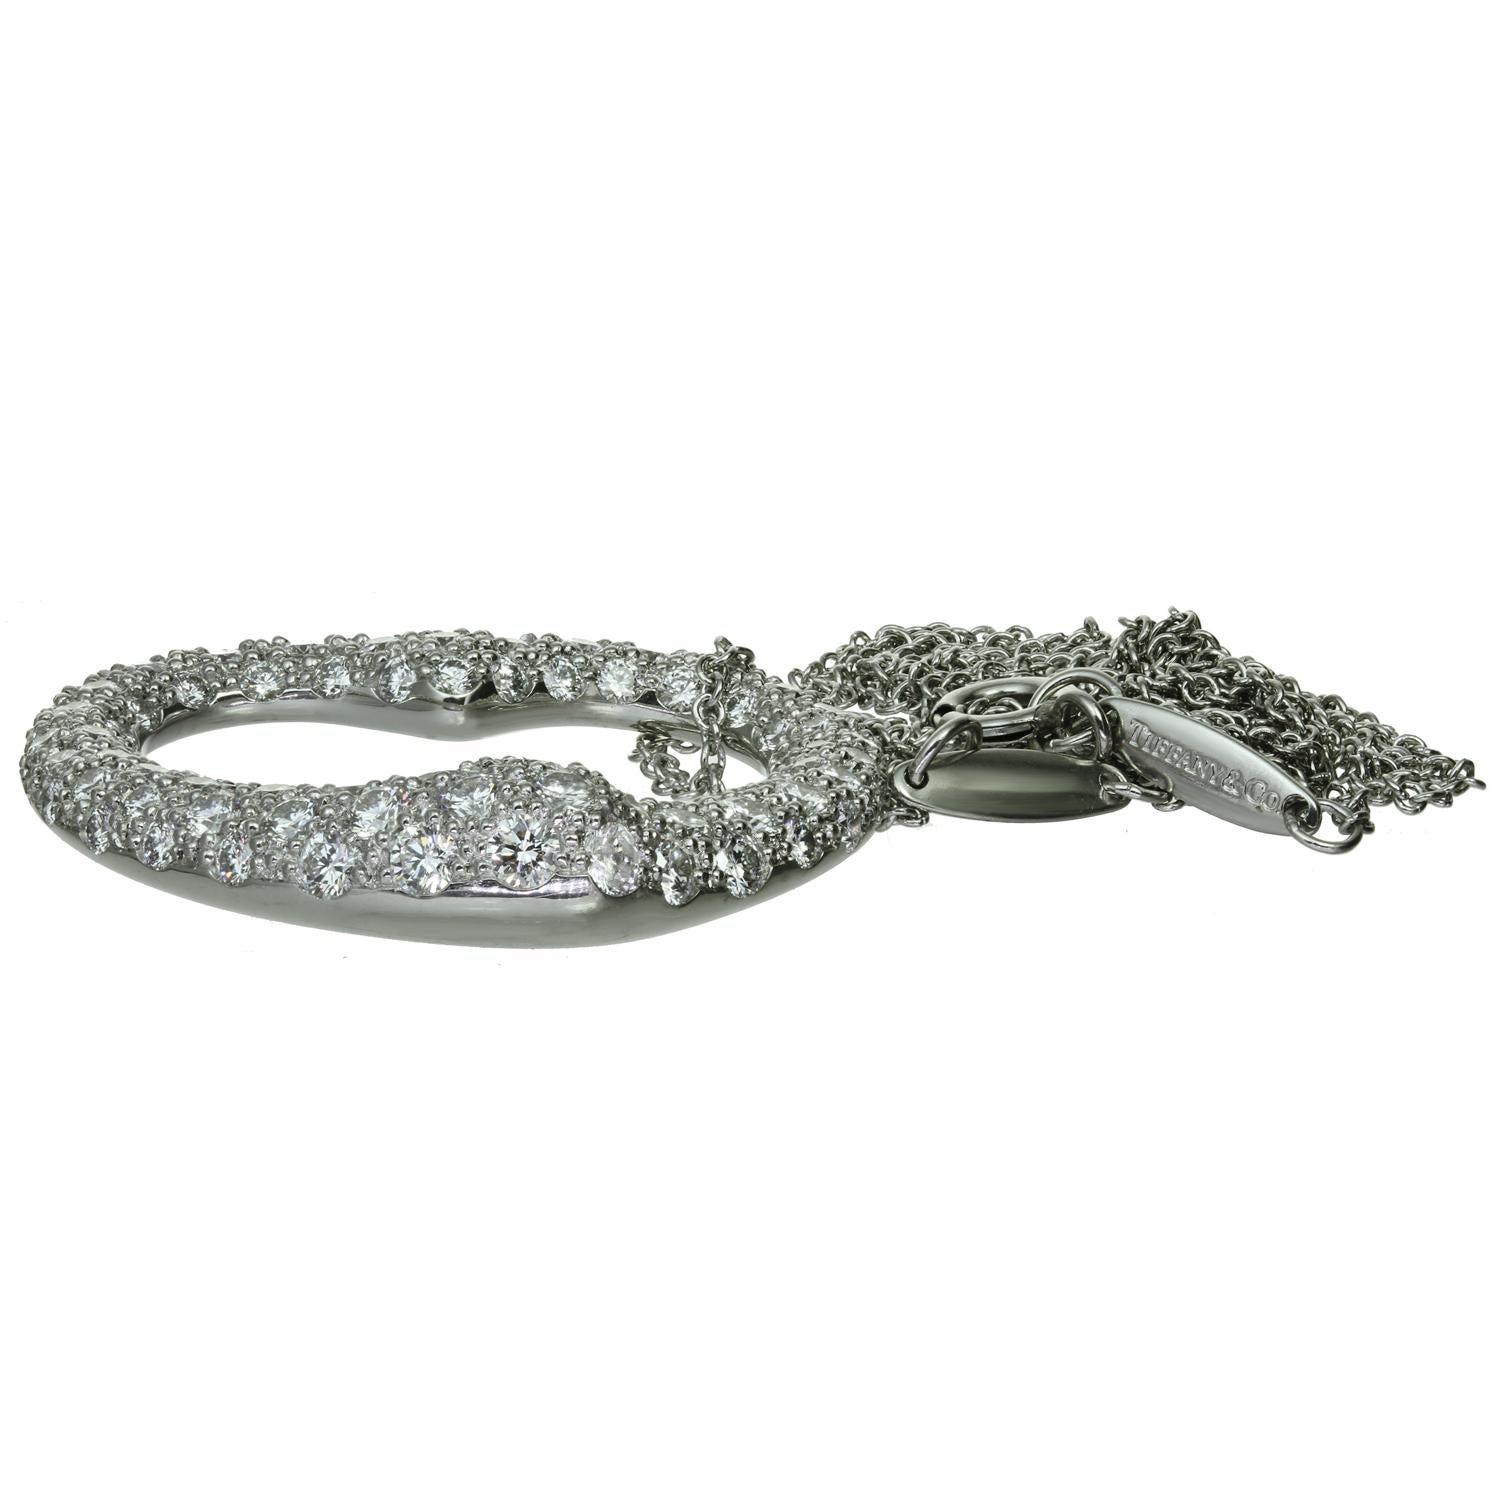 Ce magnifique collier emblématique de Tiffany & Co., conçu par Elsa Peretti, présente un pendentif en forme de cœur ouvert, réalisé en platine et serti de diamants ronds de taille F-G VVS1-VVS2 dont le poids est estimé à 2,0 carats. Complété par une